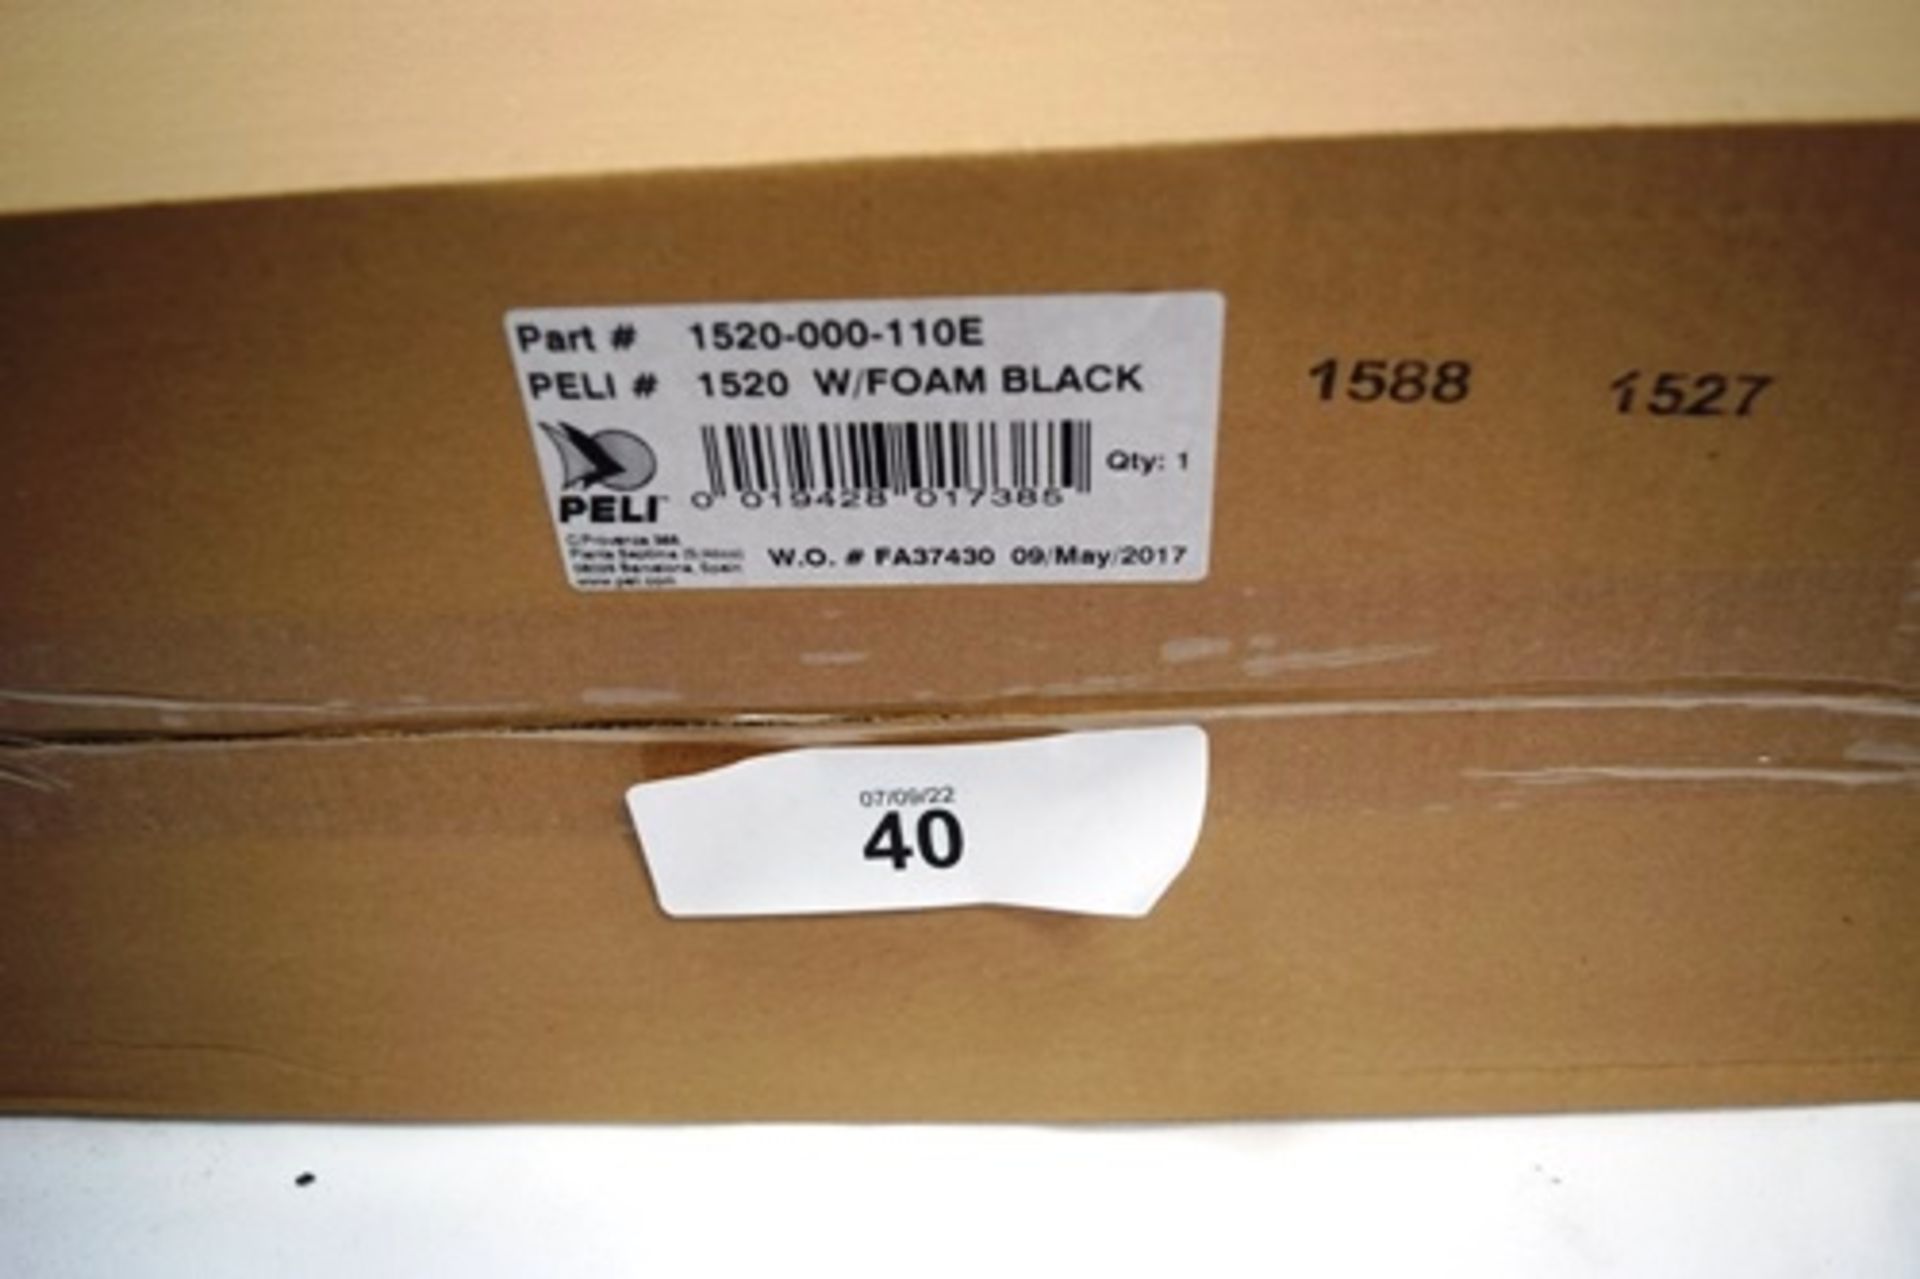 1 x Peli 1520 with foam black protective case, P.N. 1520-000-110E - New in box (GS7)